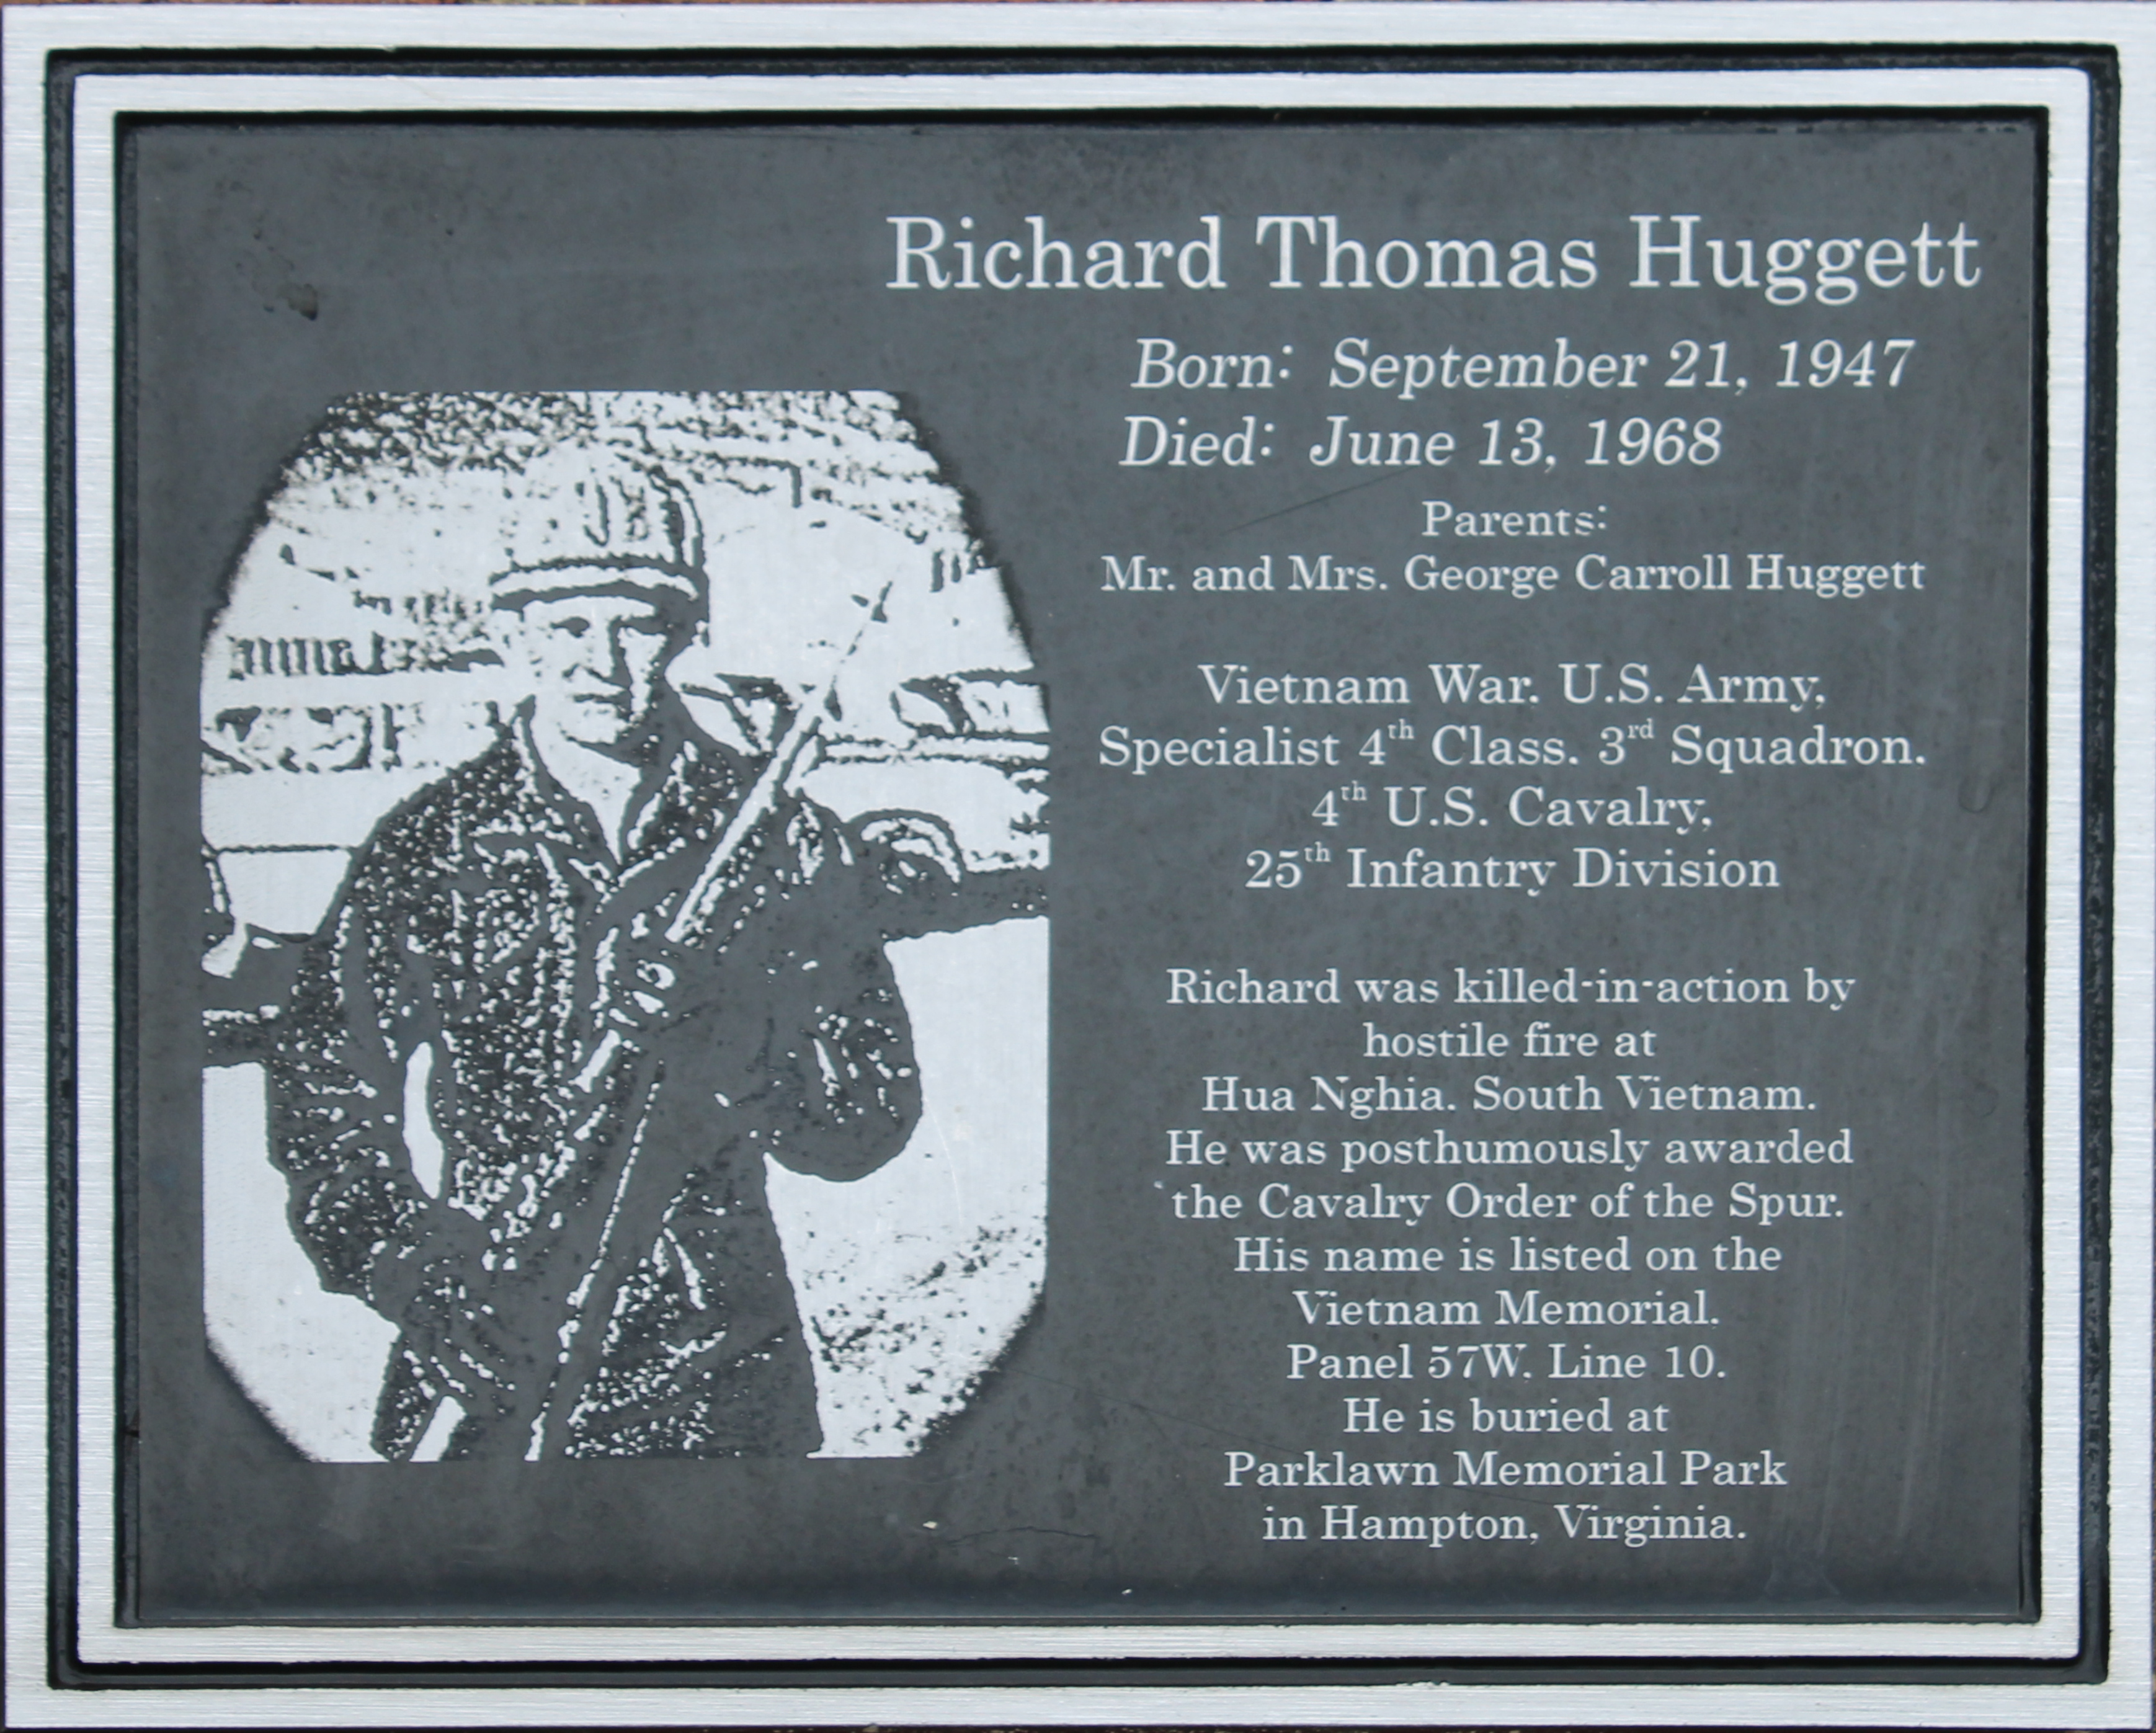 Richard Huggett